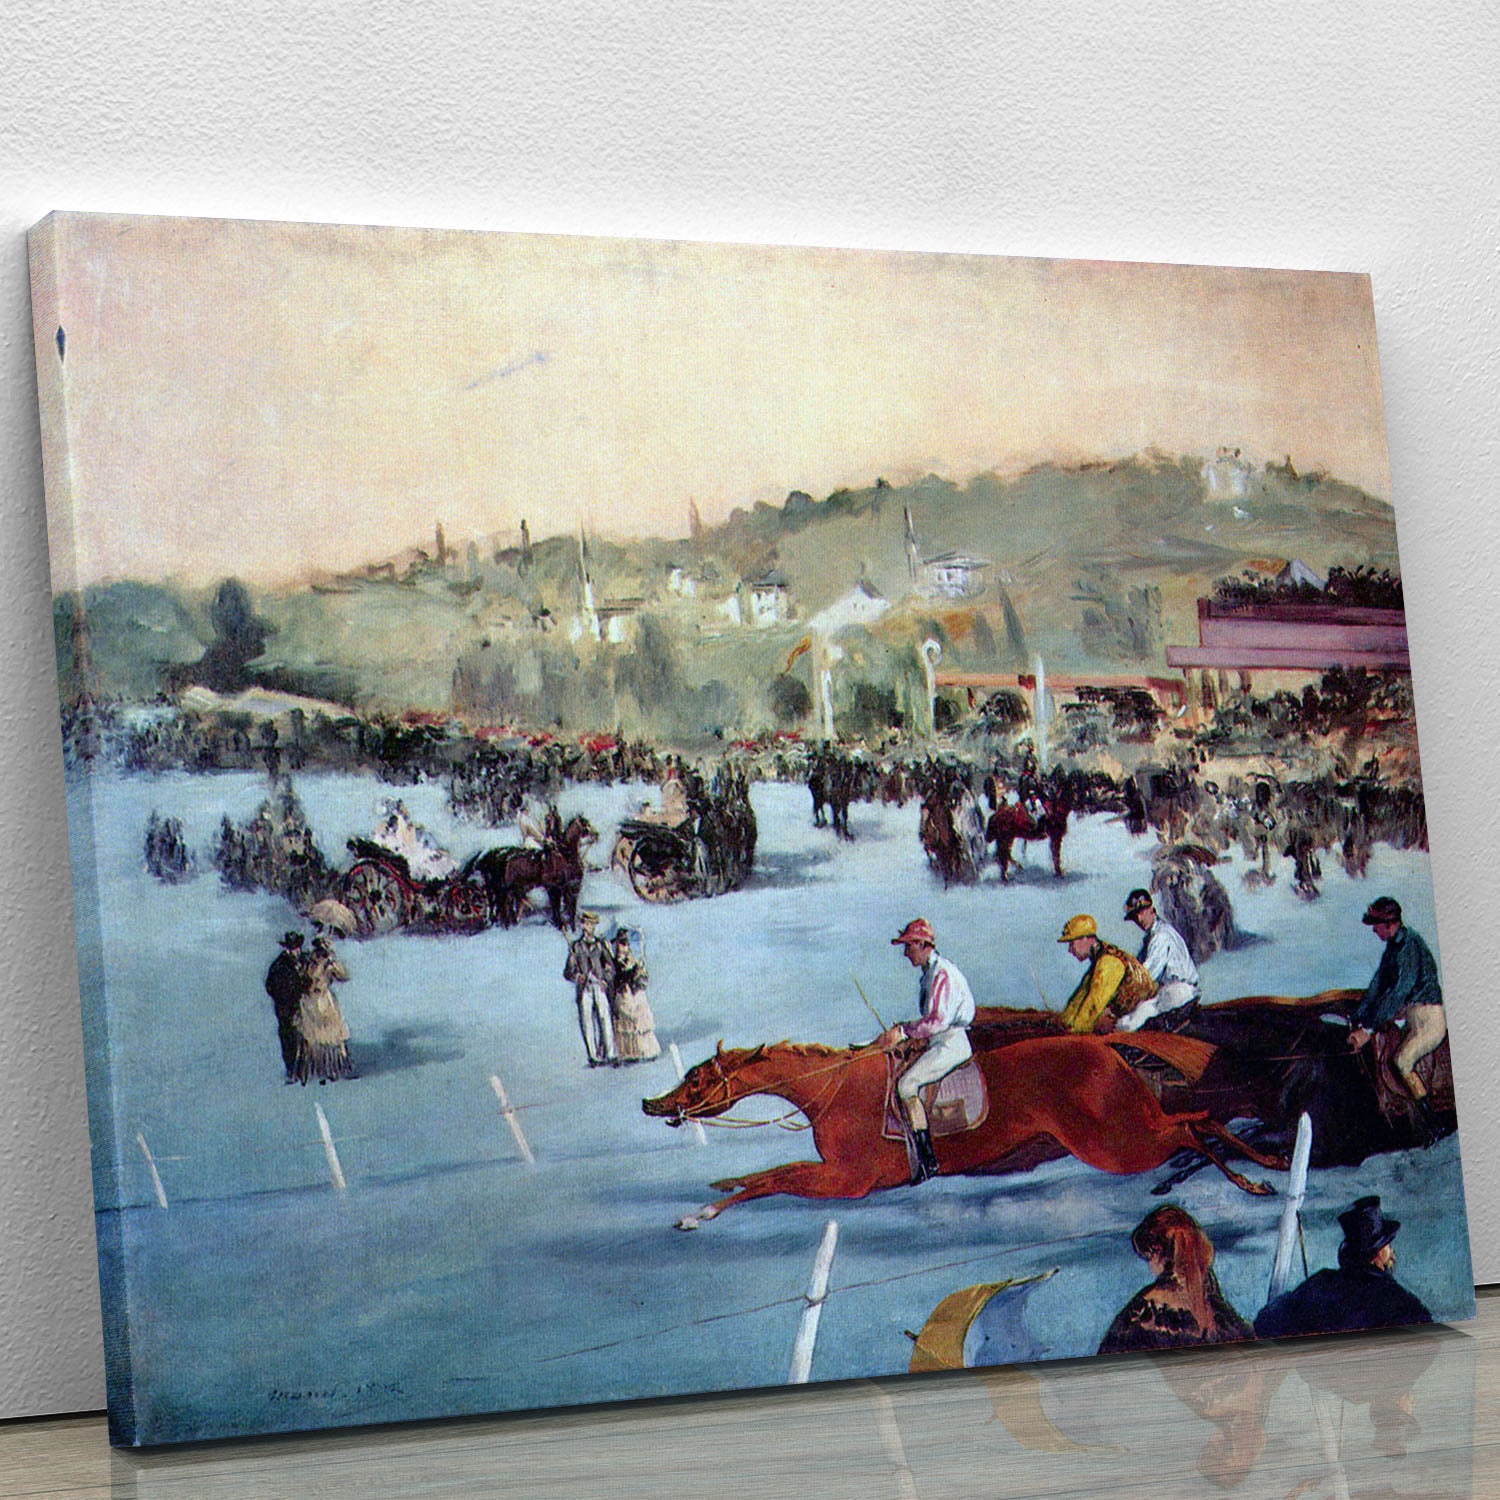 Races at the Bois de Boulogne by Manet Canvas Print or Poster - Canvas Art Rocks - 1